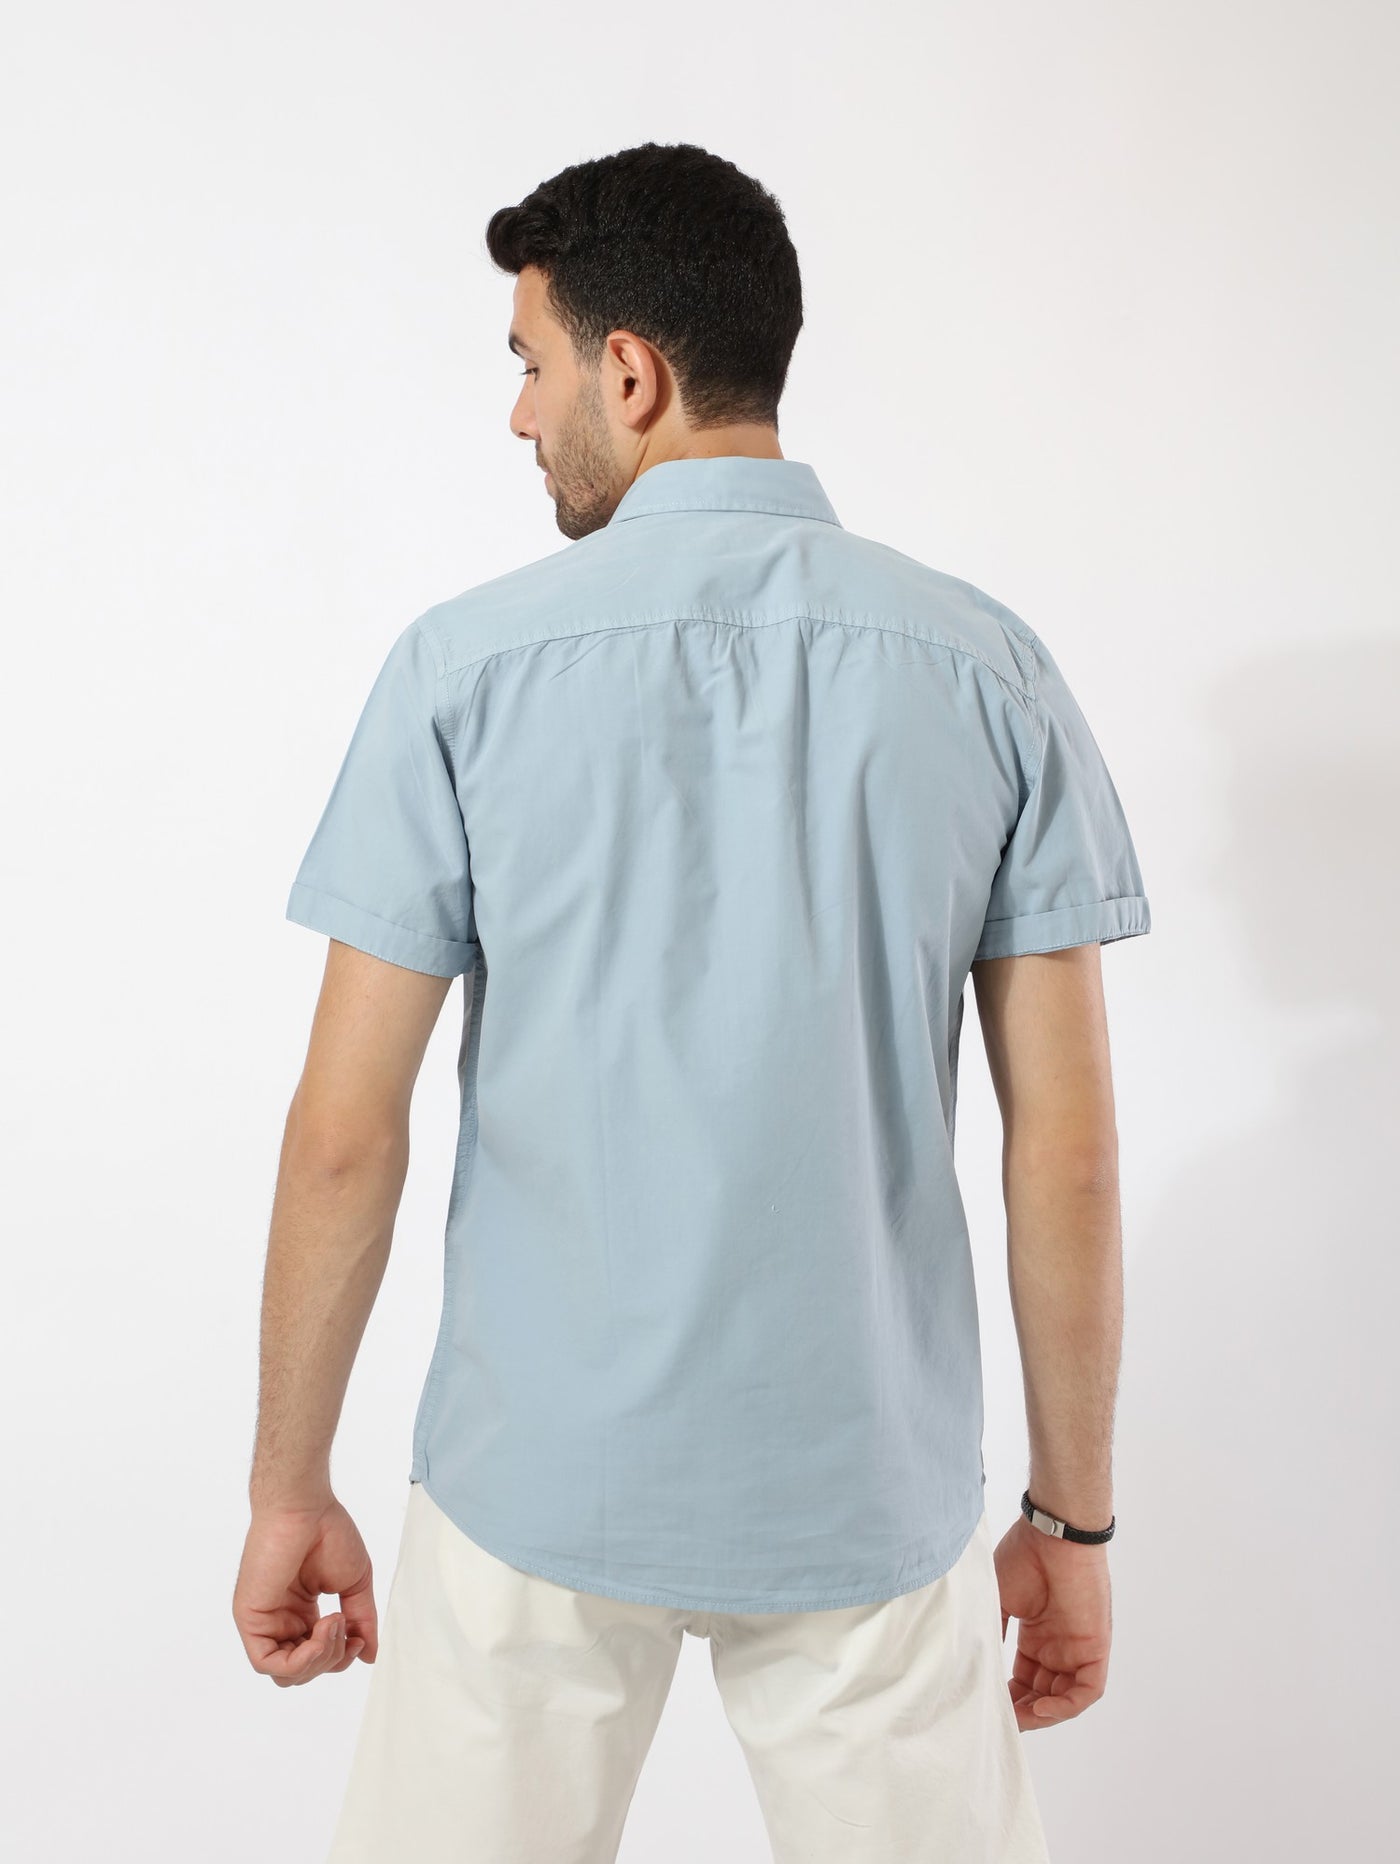 Shirt - Short Sleeves - Front Pocket